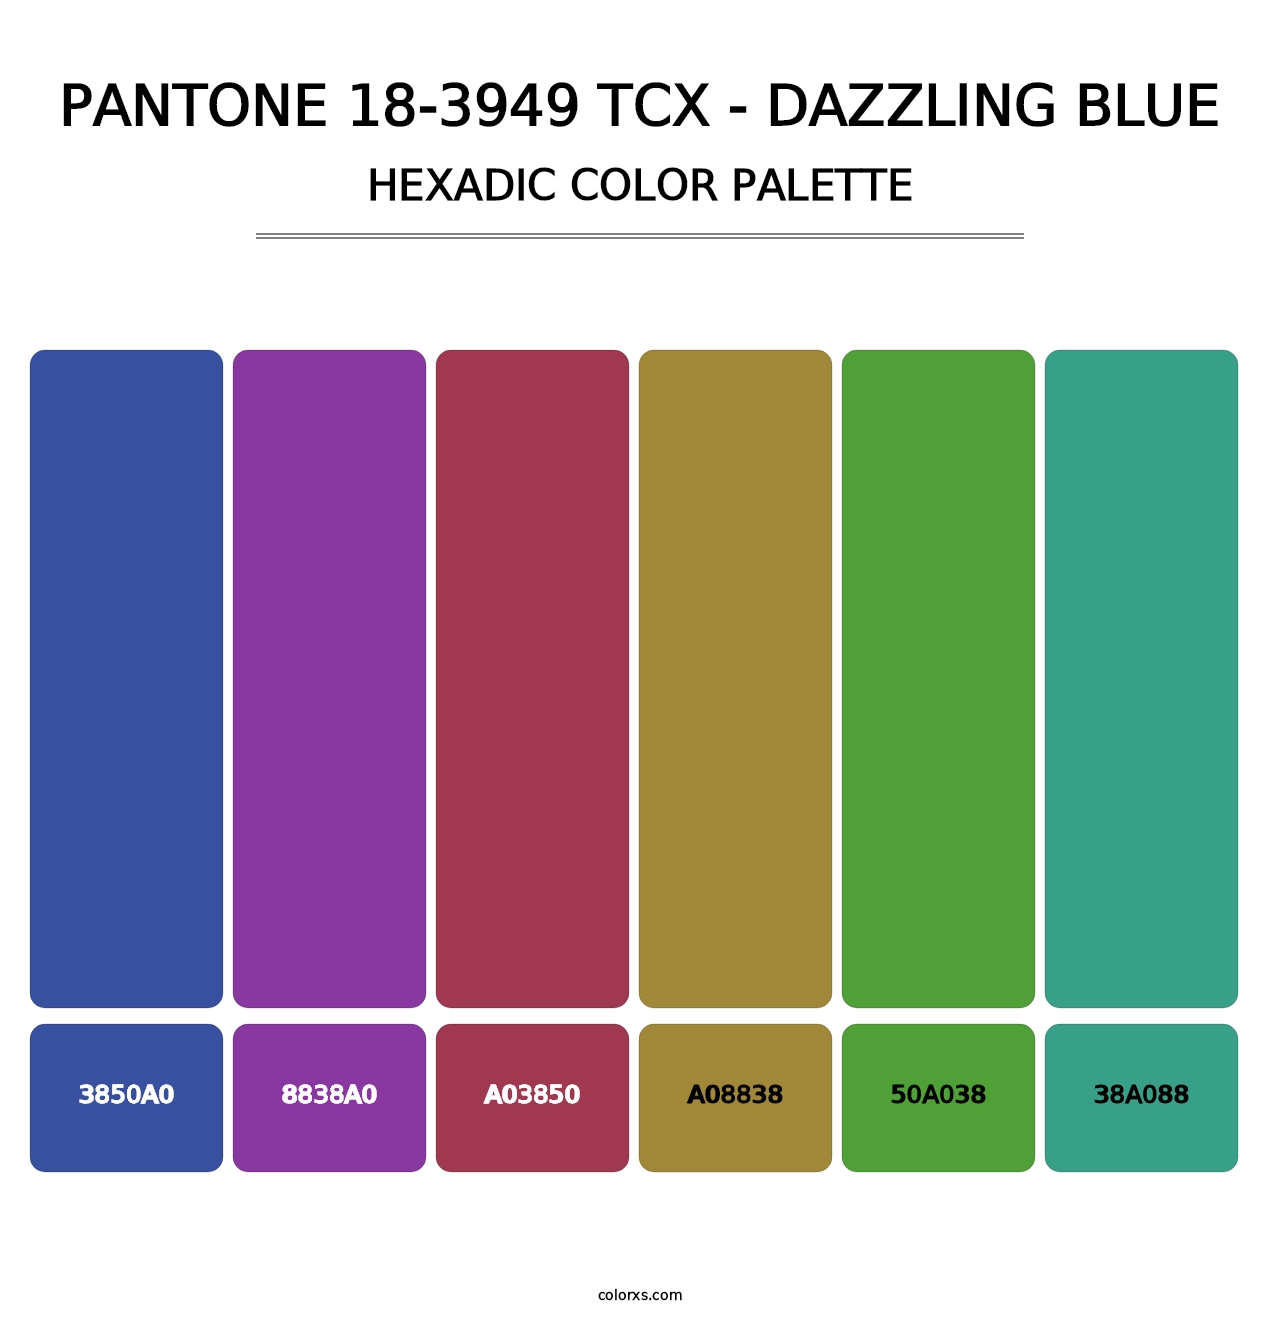 PANTONE 18-3949 TCX - Dazzling Blue - Hexadic Color Palette